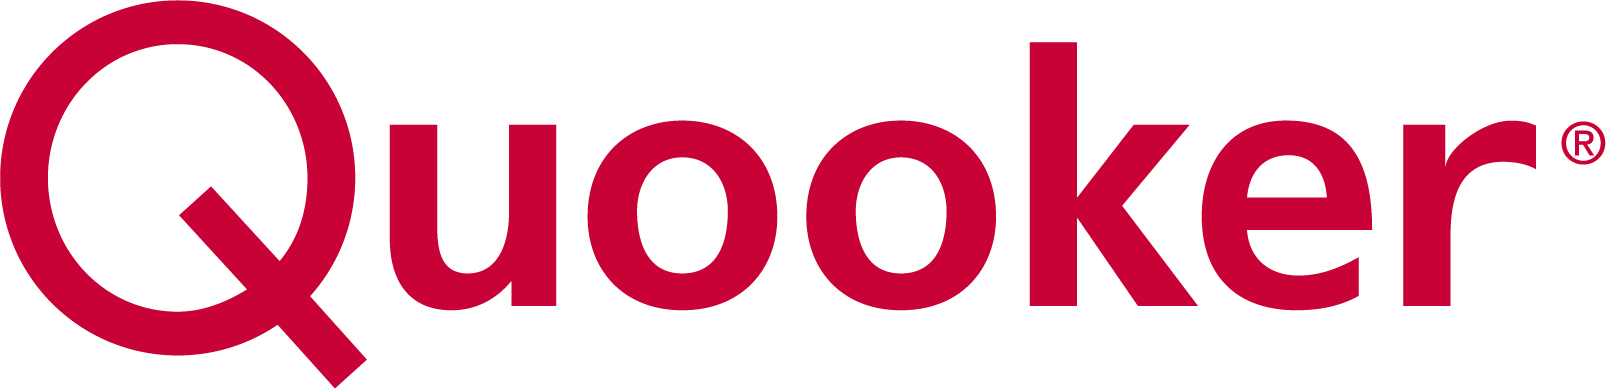 Quooker logo CMYK 0,100,65,15.jpg